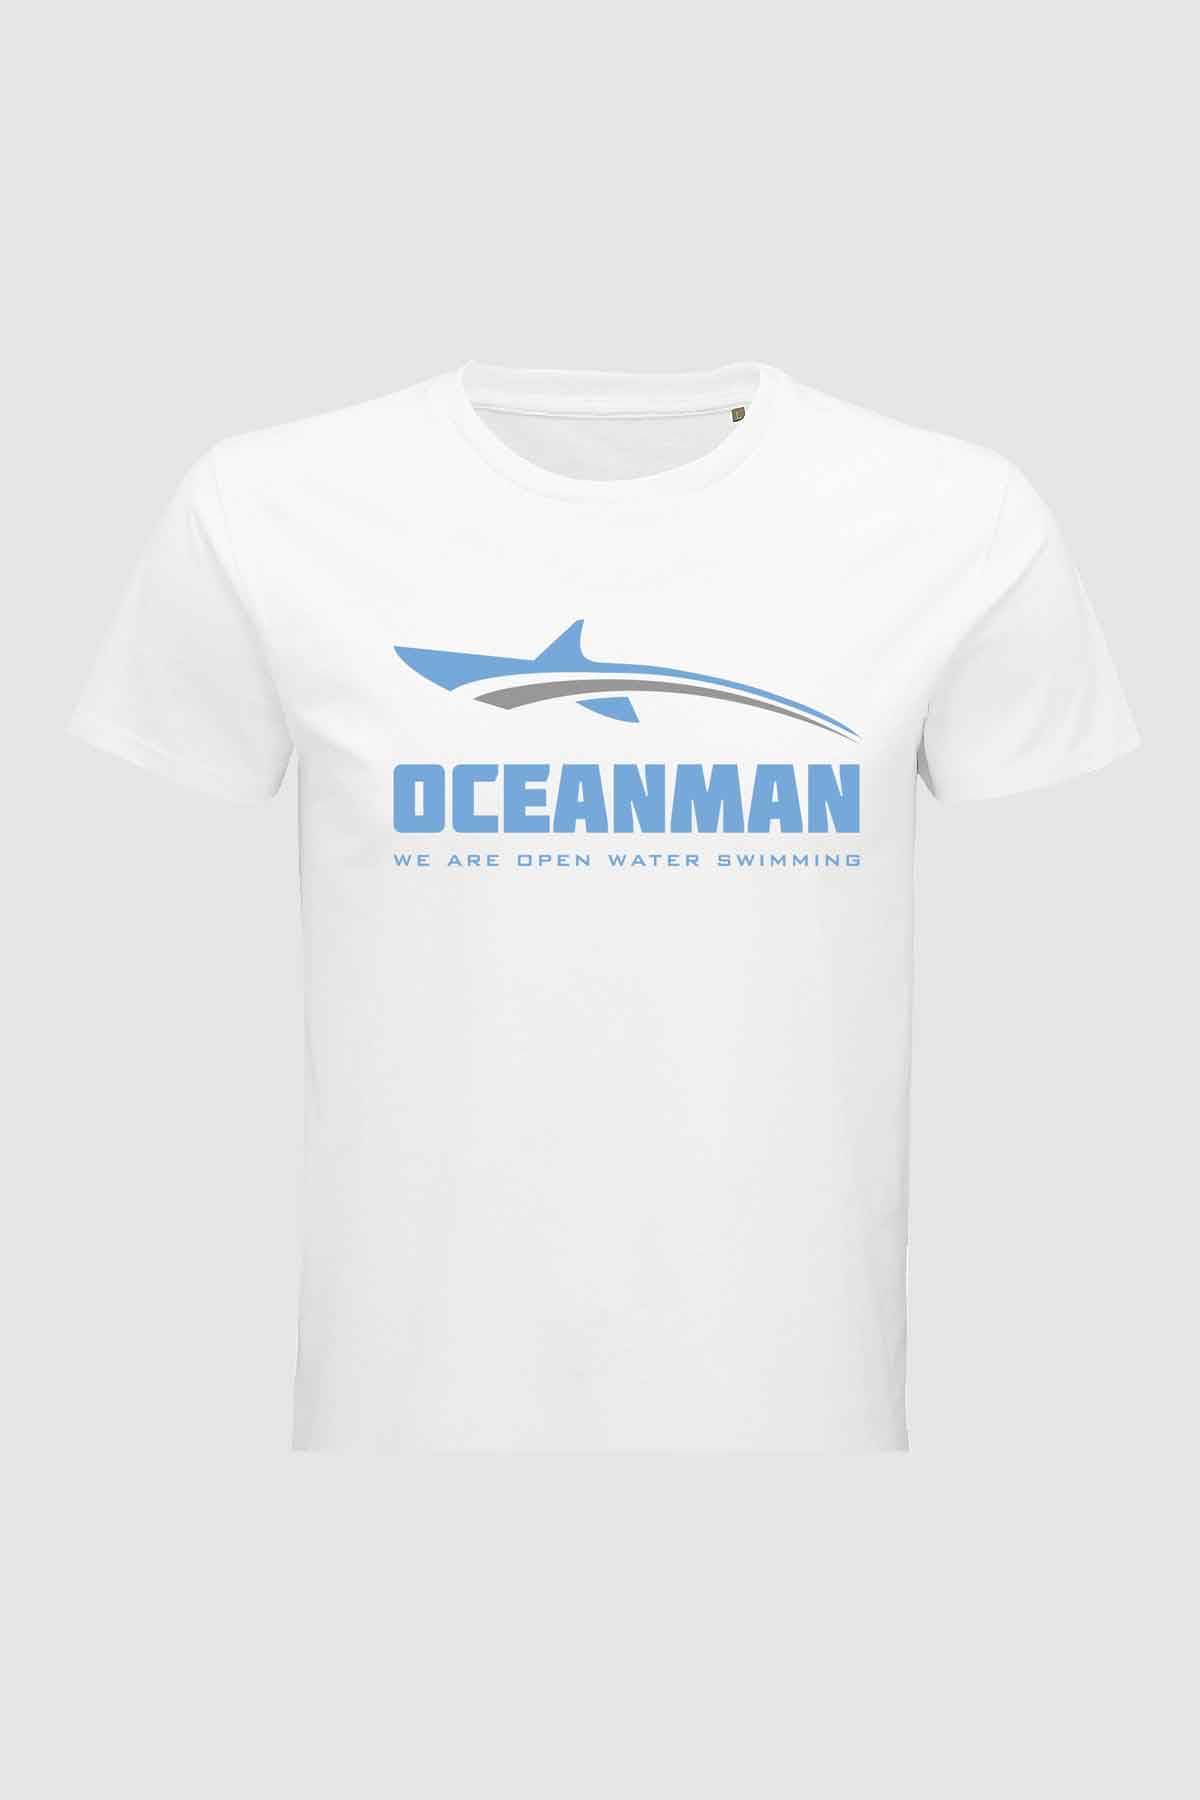 Oceanman icont t shirt white men